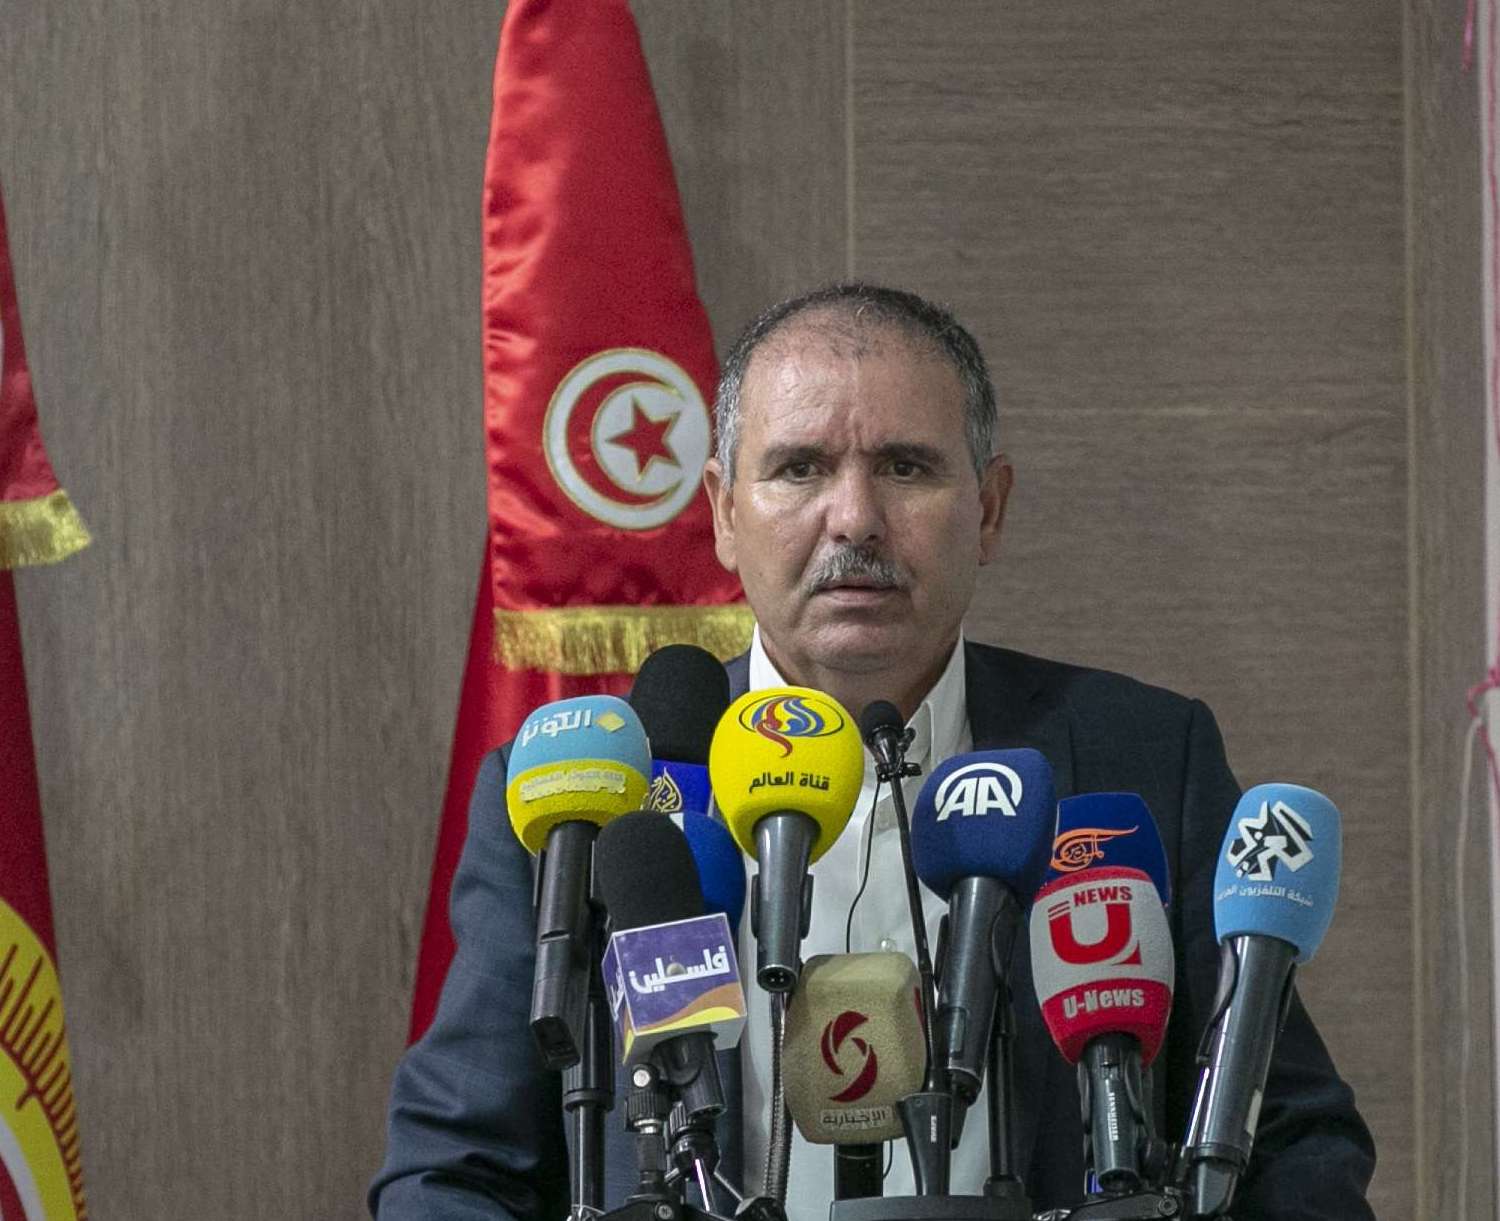 جديد الأزمة التونسية: الطبّوبي يتلقى تهديدات بالقتل والنّاصر يدير الحوار الوطني